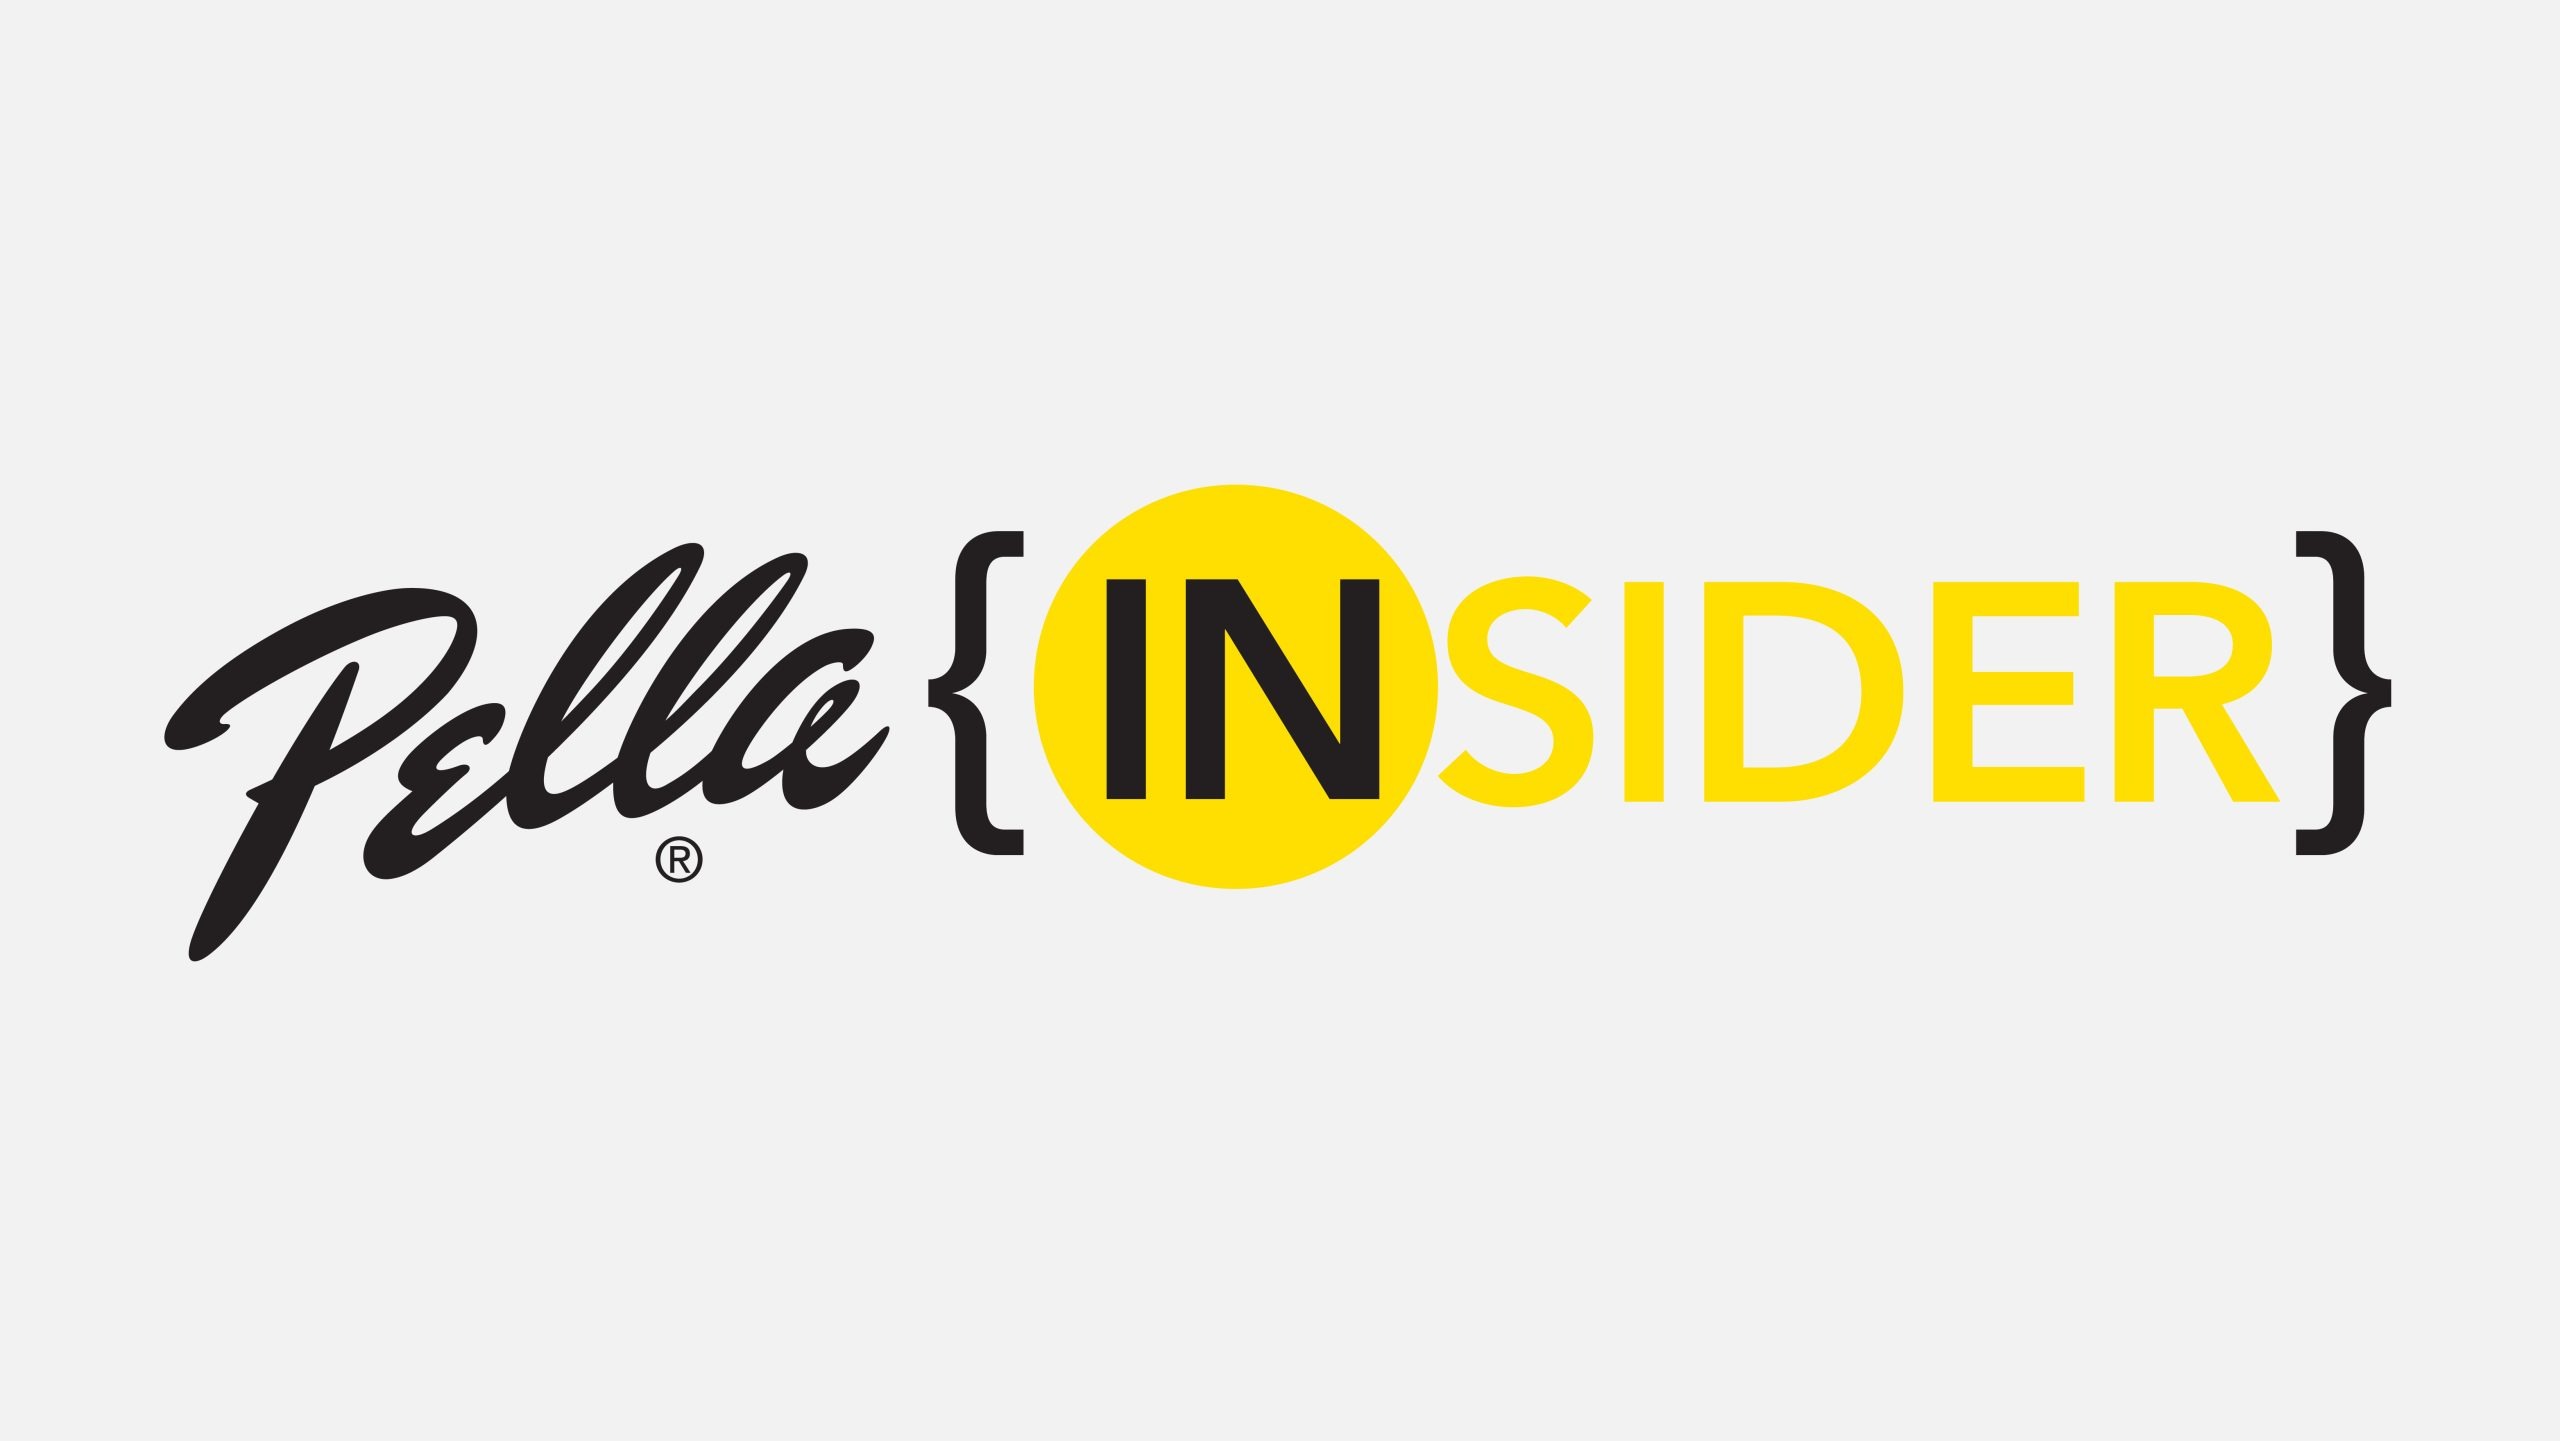 Logo Design: Pella Insider